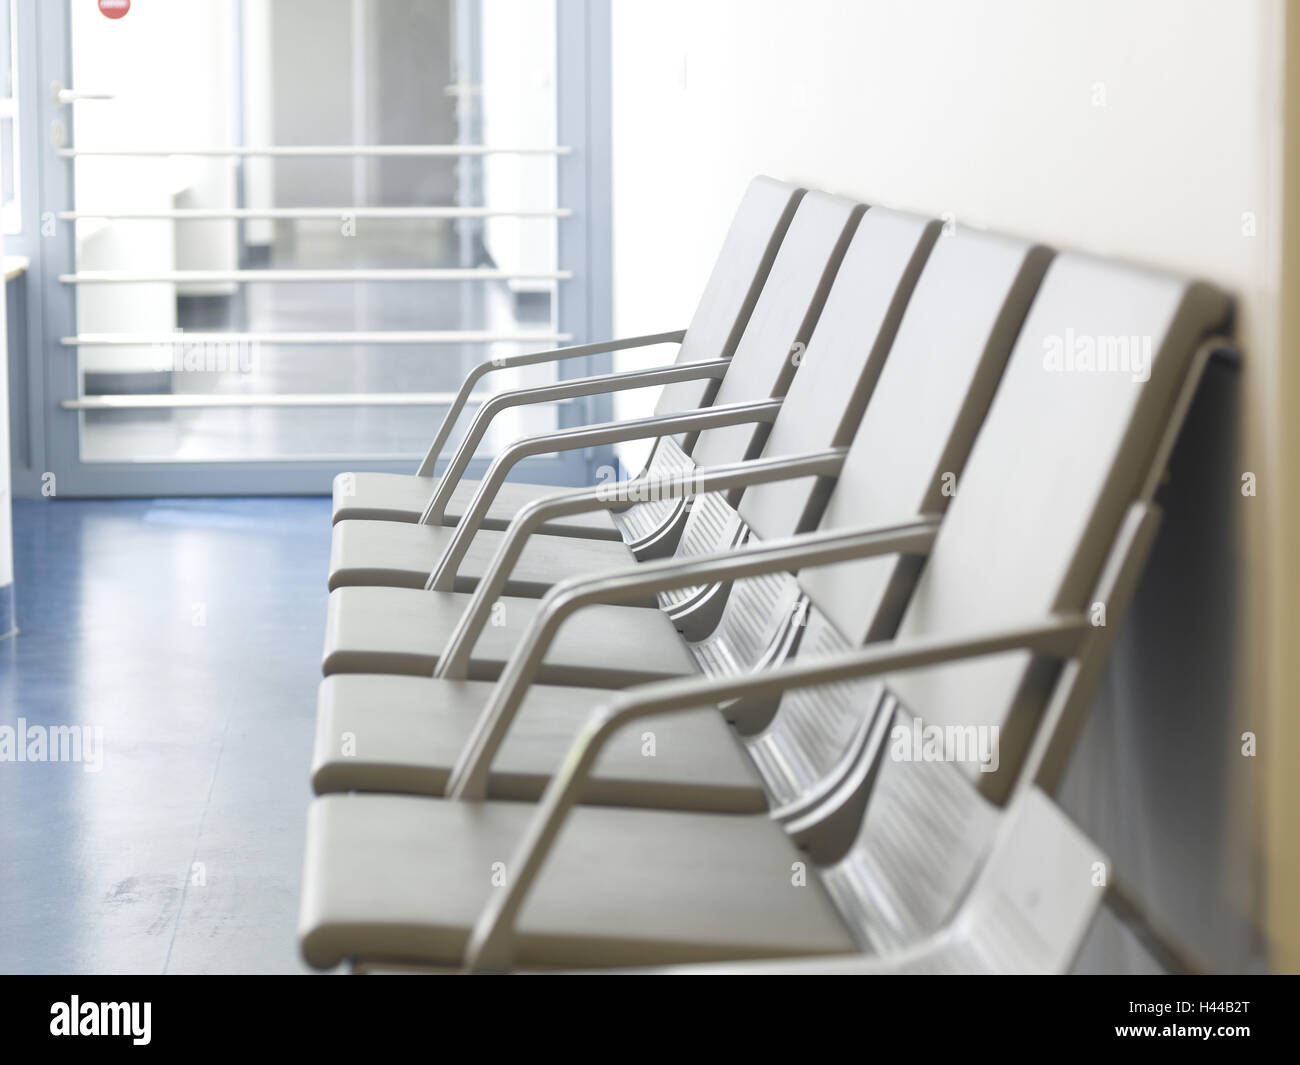 Wartezimmer, Krankenhaus Hall, Stühle, wartenden Palette, des Patienten,  Klinik Stockfotografie - Alamy